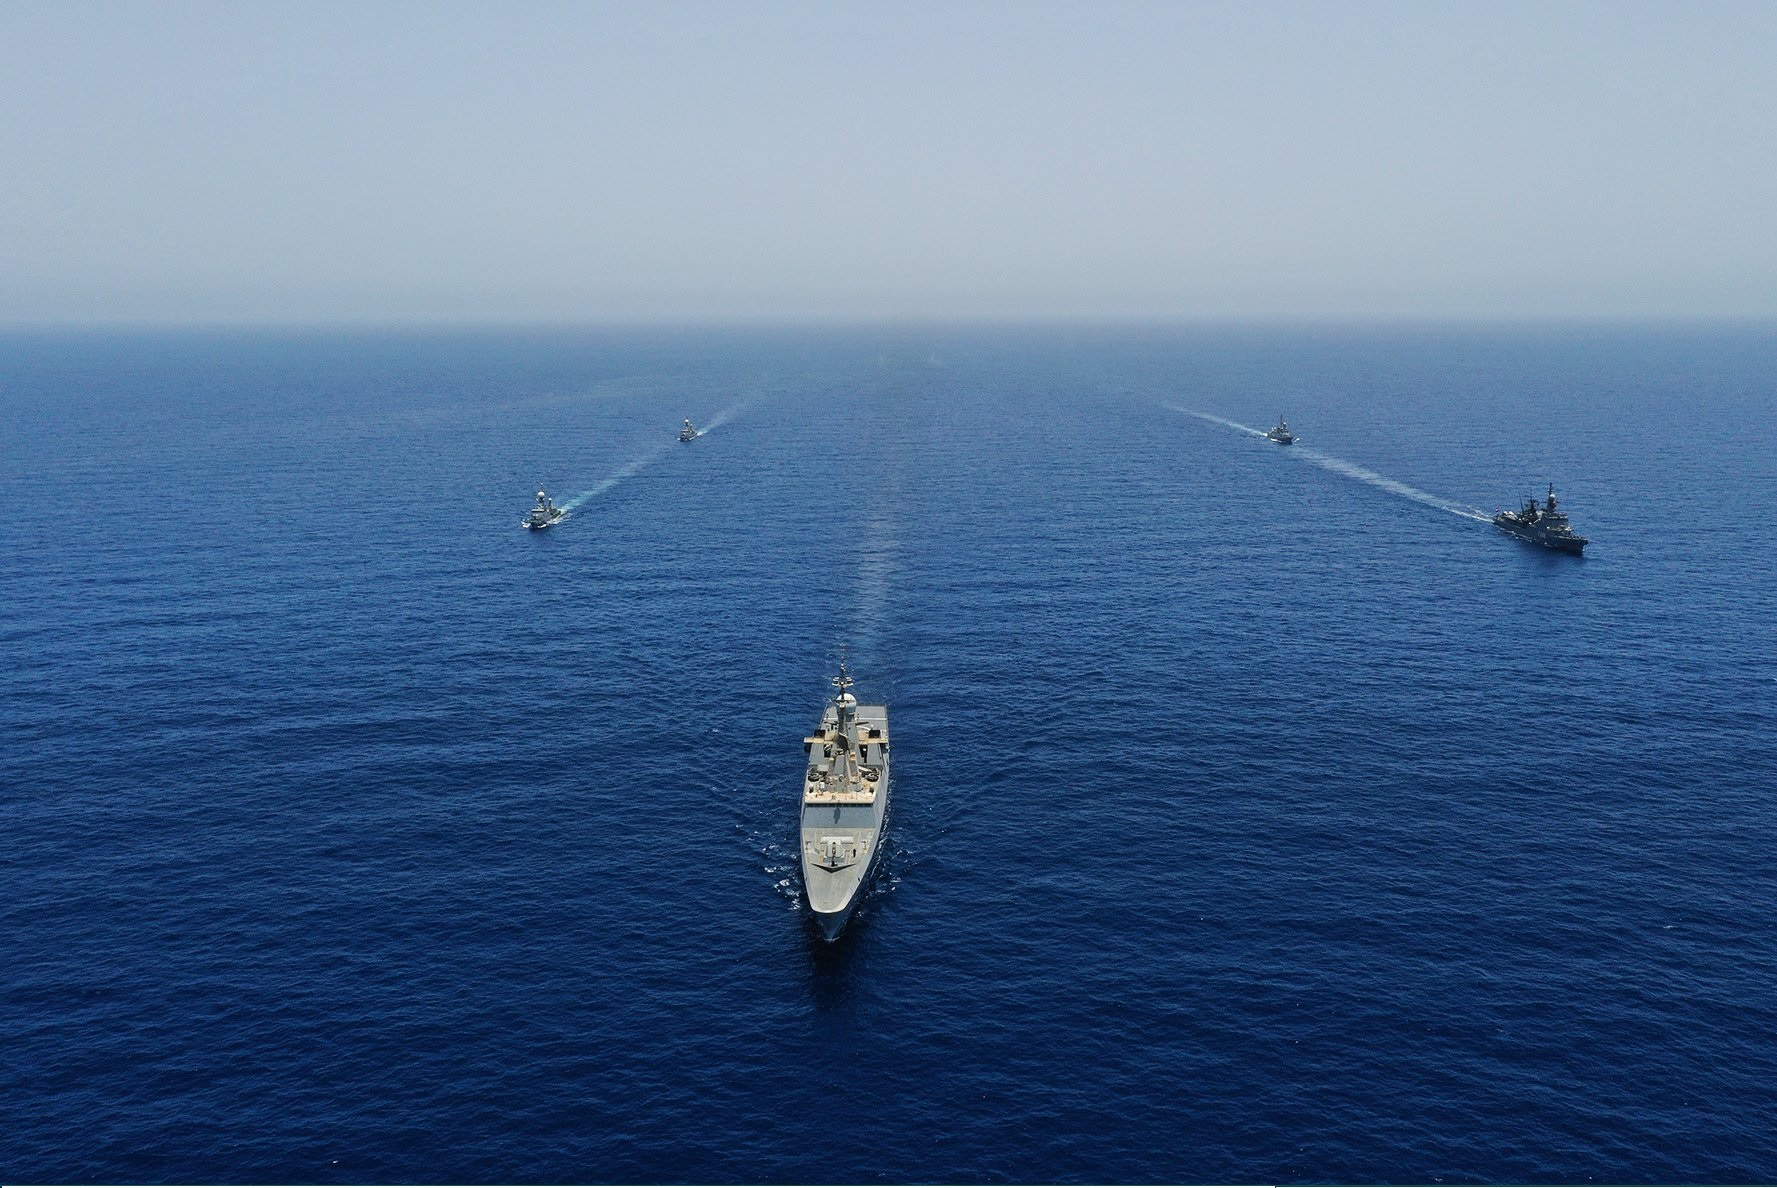 القوات البحرية من الدول المشاطئة للبحر الأحمر، حول حماية وتأمين الممرات المائية (موقع وزارة الدفاع السعودية)